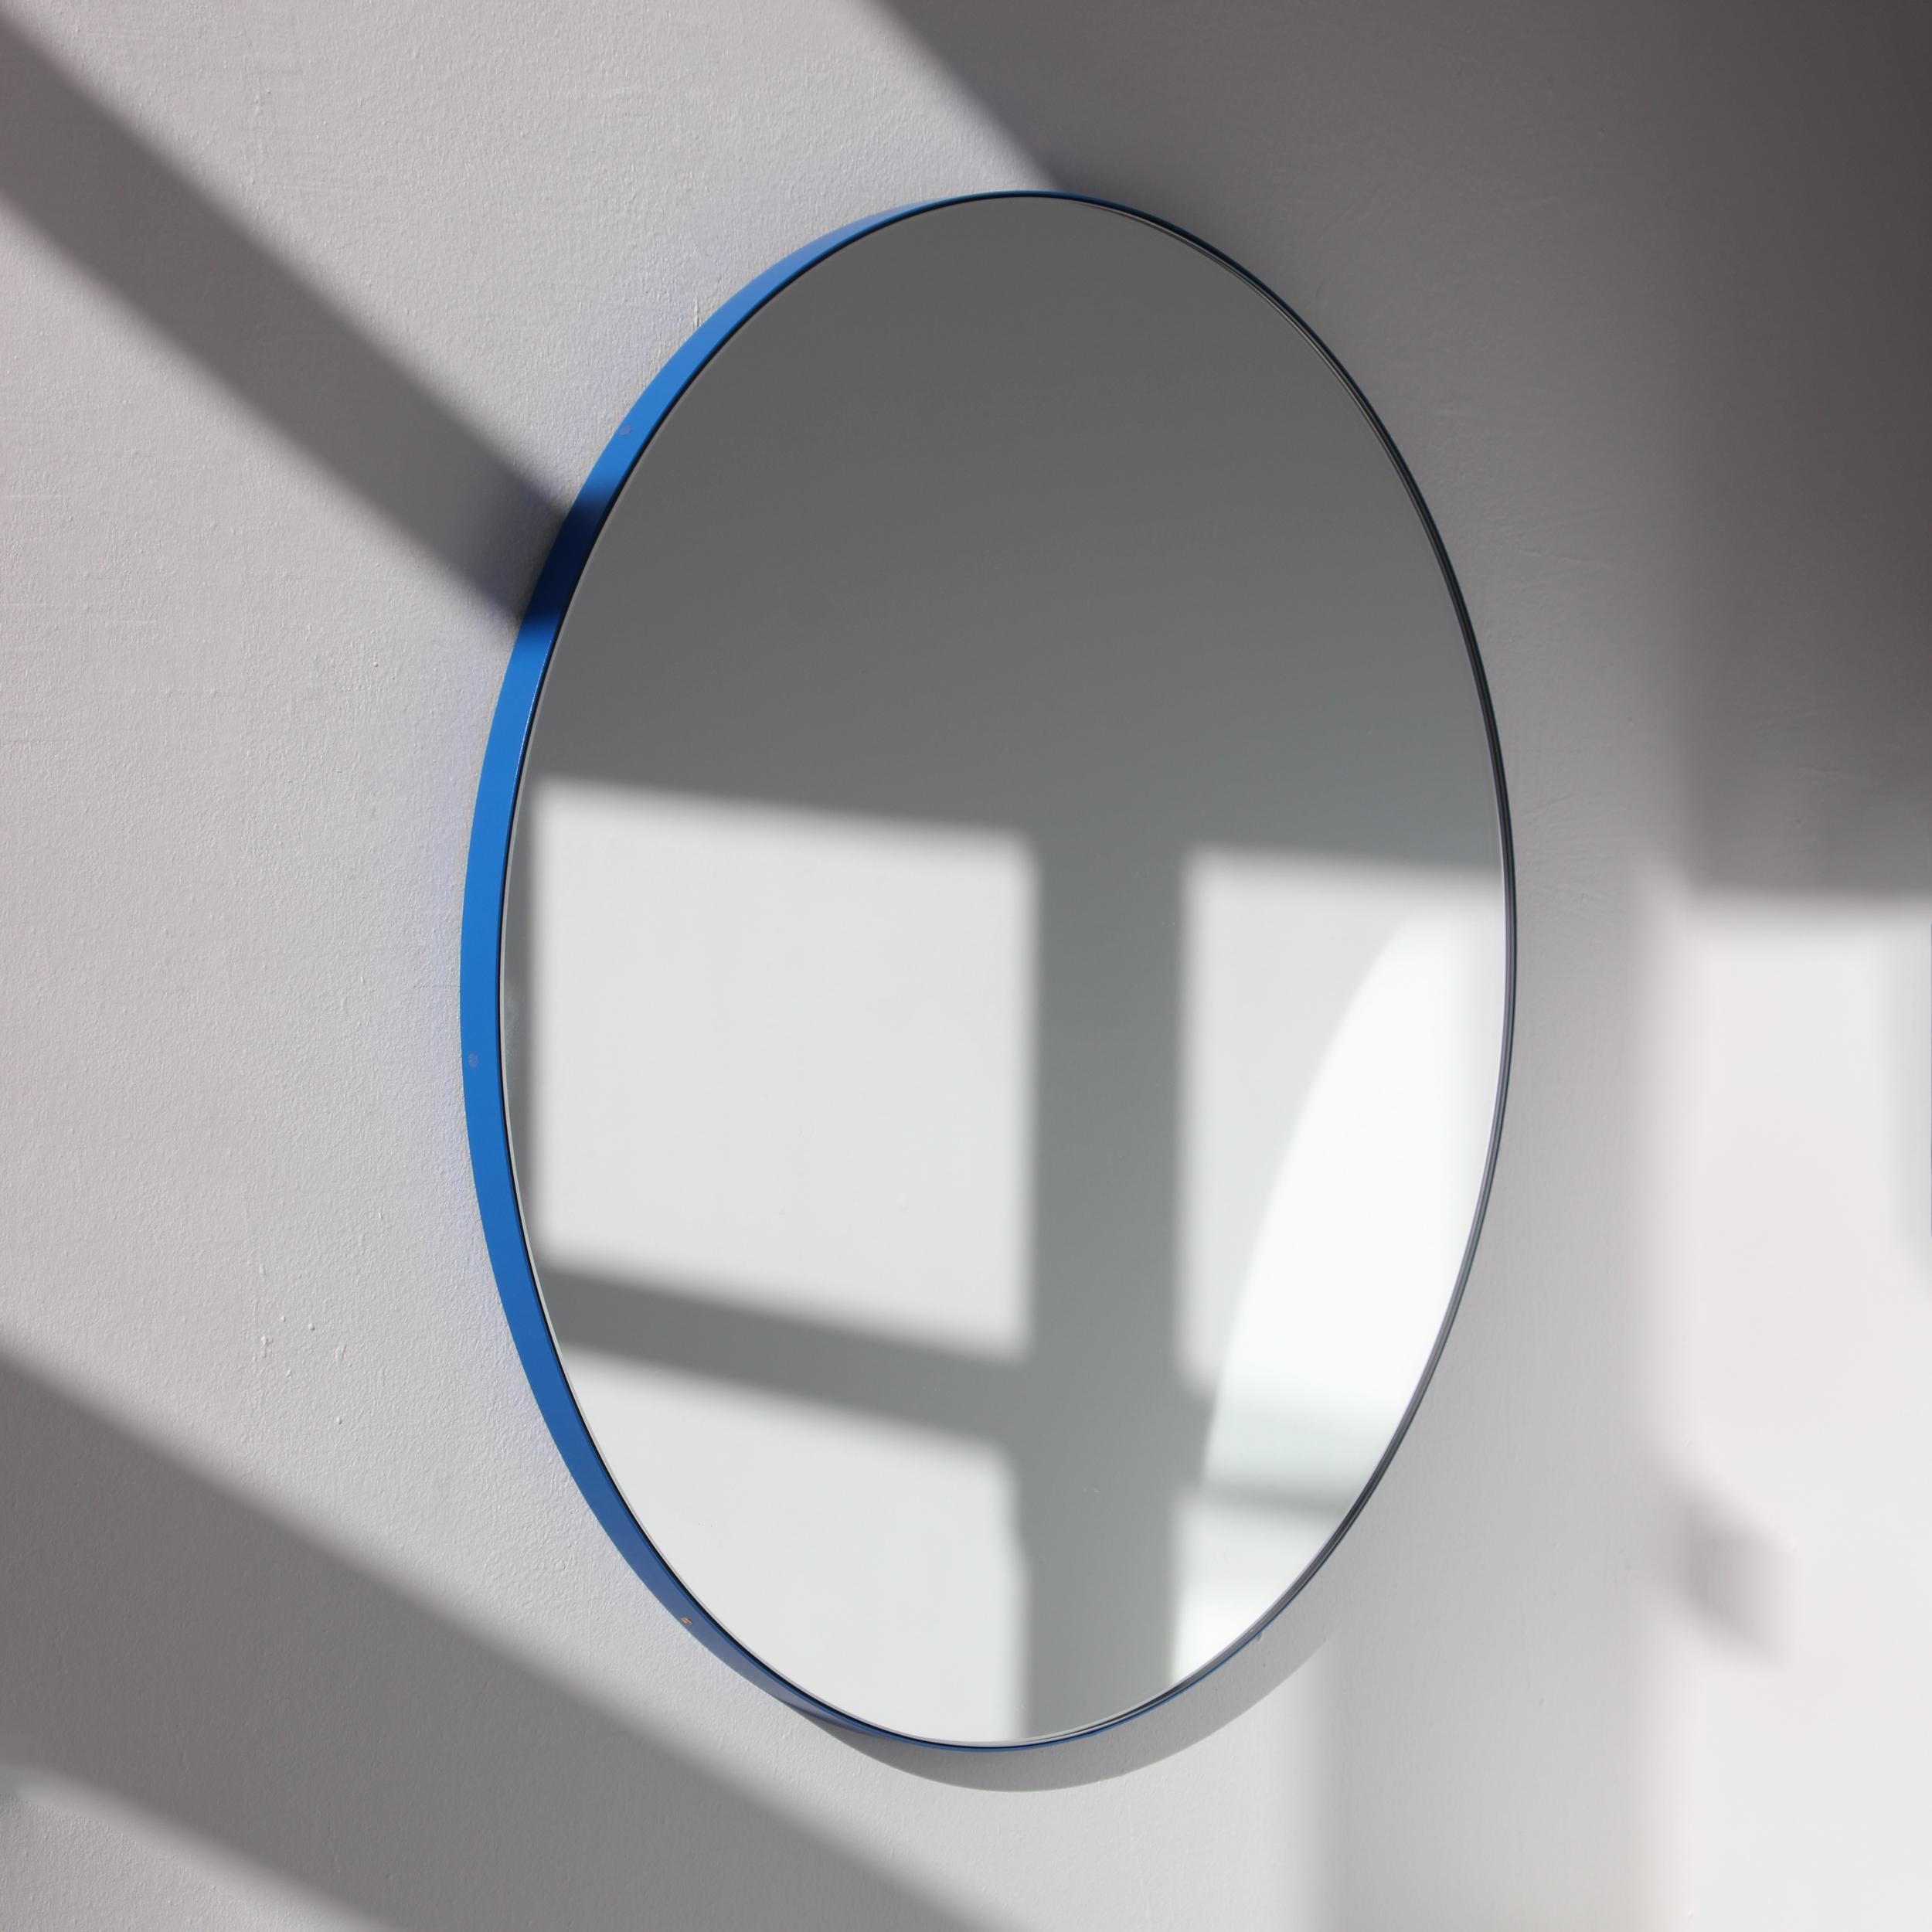 Minimalistischer runder Orbis™-Spiegel mit einem modernen, blau pulverbeschichteten Aluminiumrahmen. Entworfen und handgefertigt in London, UK.

Unsere Spiegel sind mit einem integrierten französischen Befestigungssystem (geteilte Leisten)